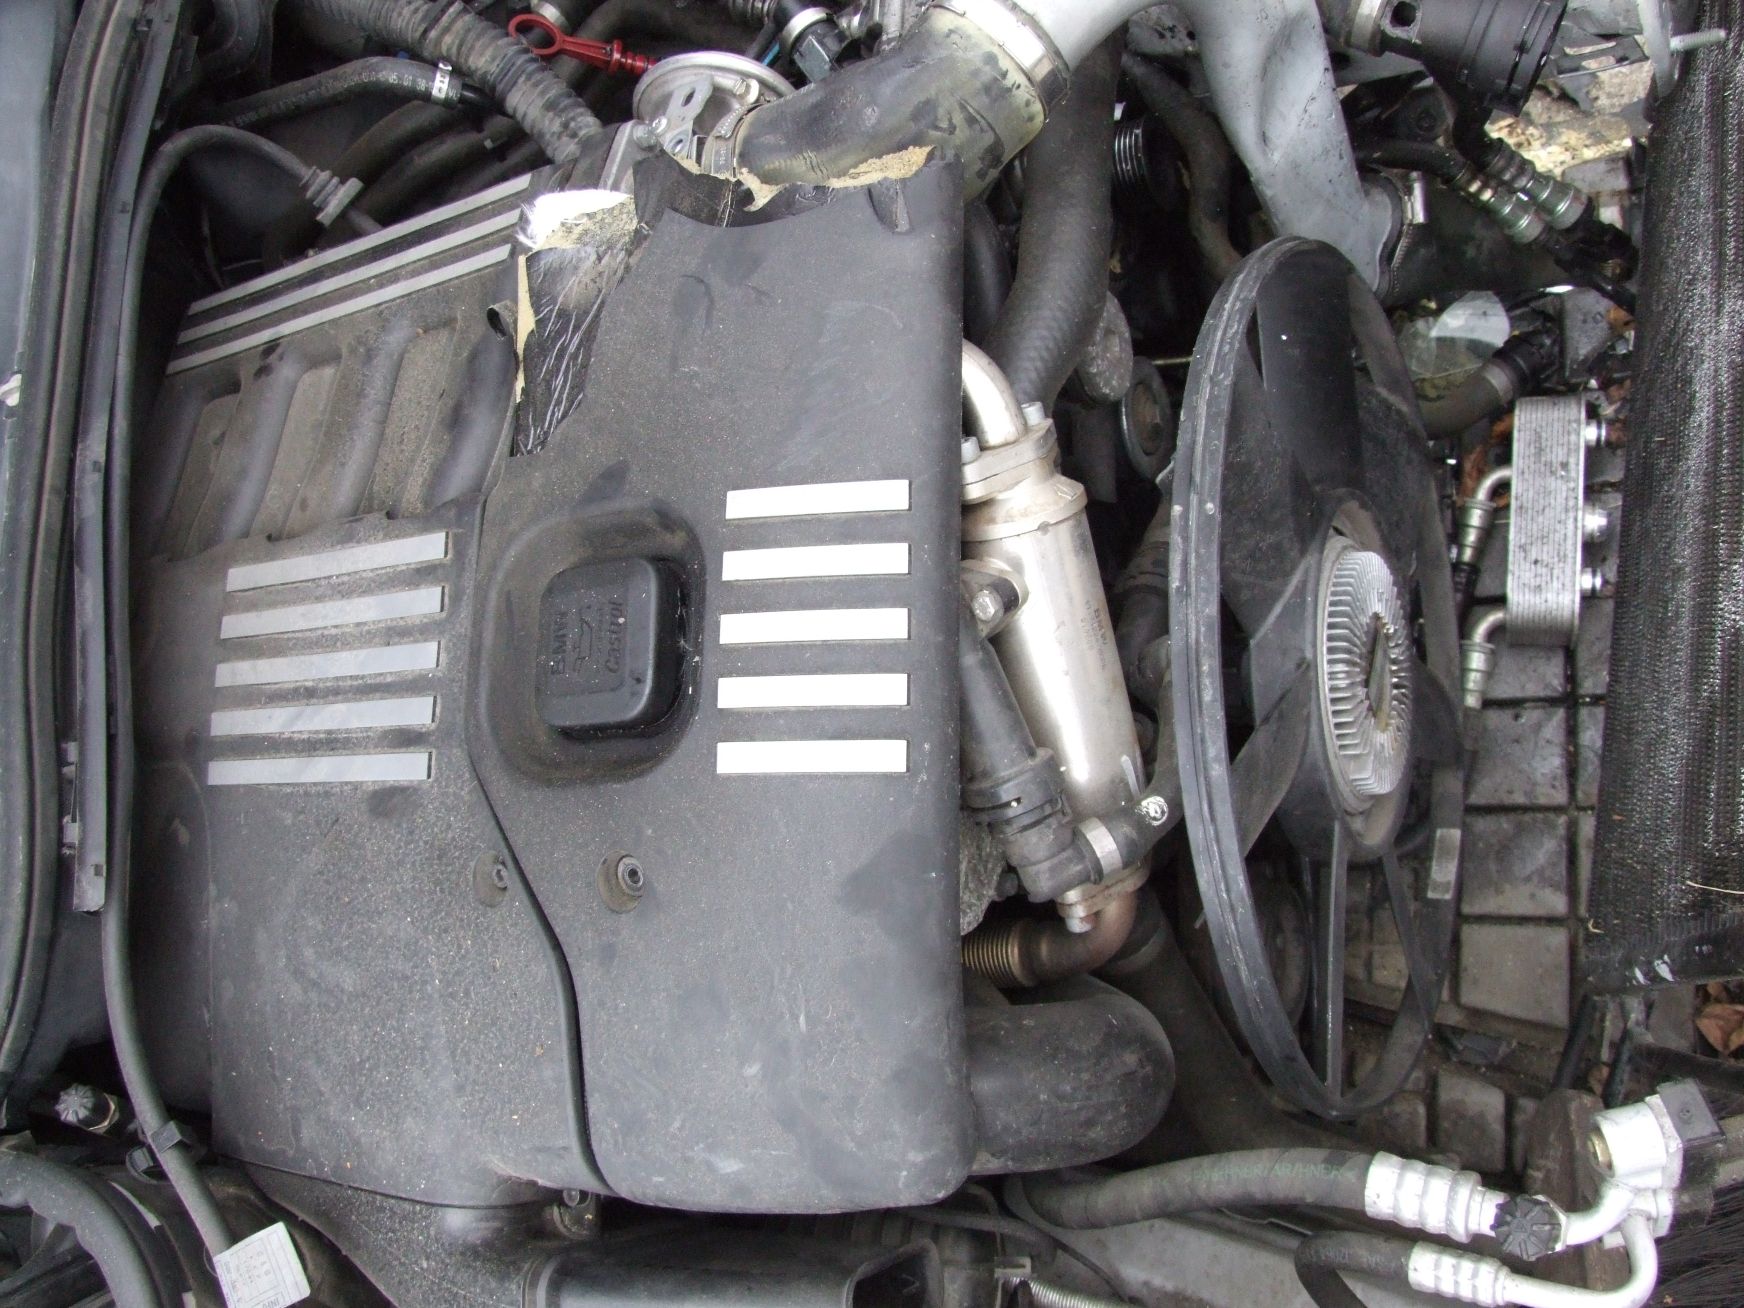 Motor aus BMW E46 320d Code 204D1 BMW M47 D20 (gebraucht)